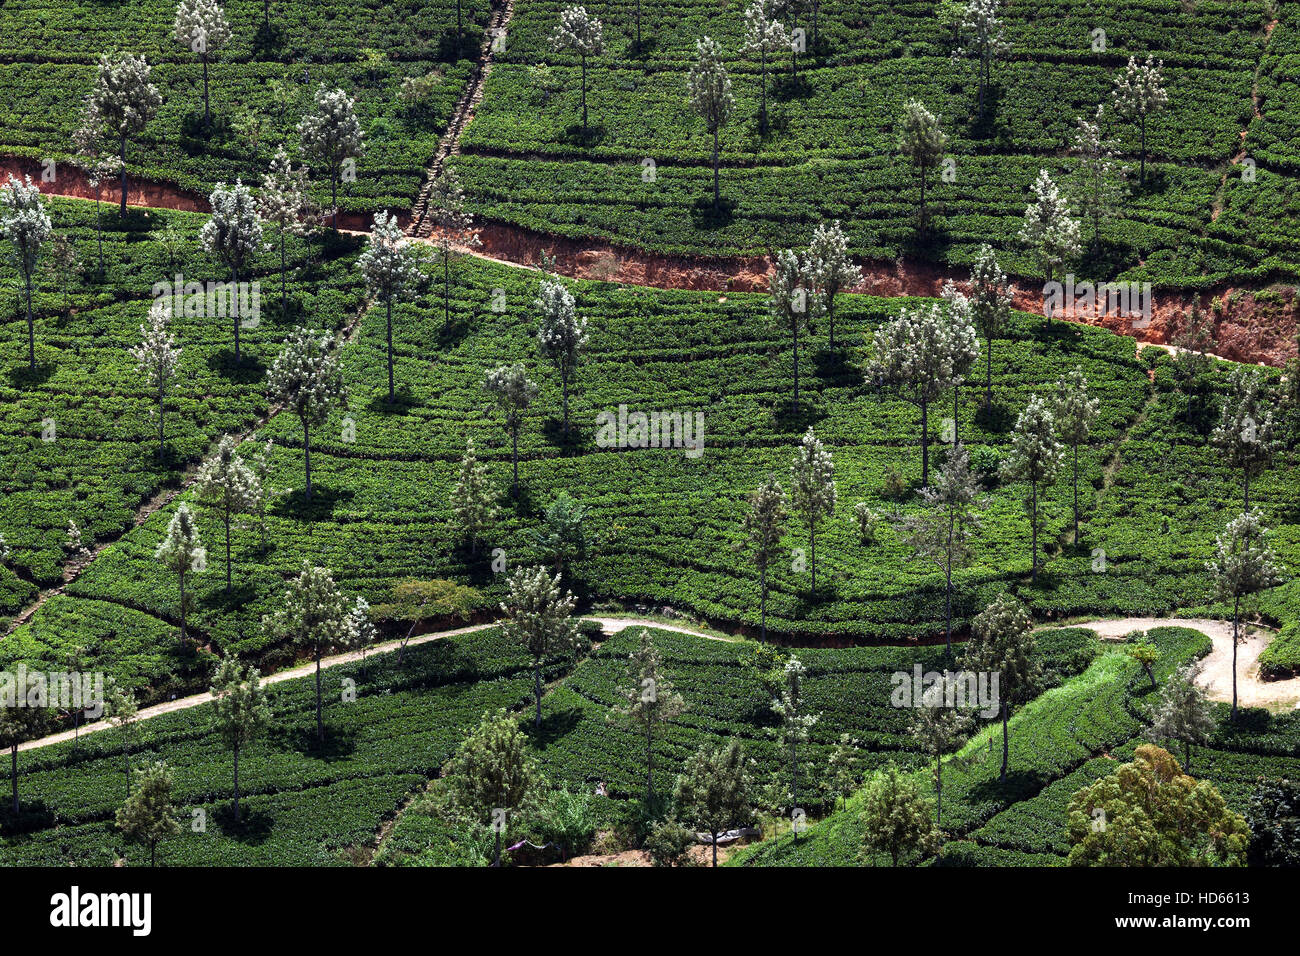 Les usines de thé (Camellia sinensis), la culture des hautes terres, Haputale, Province du Centre, au Sri Lanka Banque D'Images